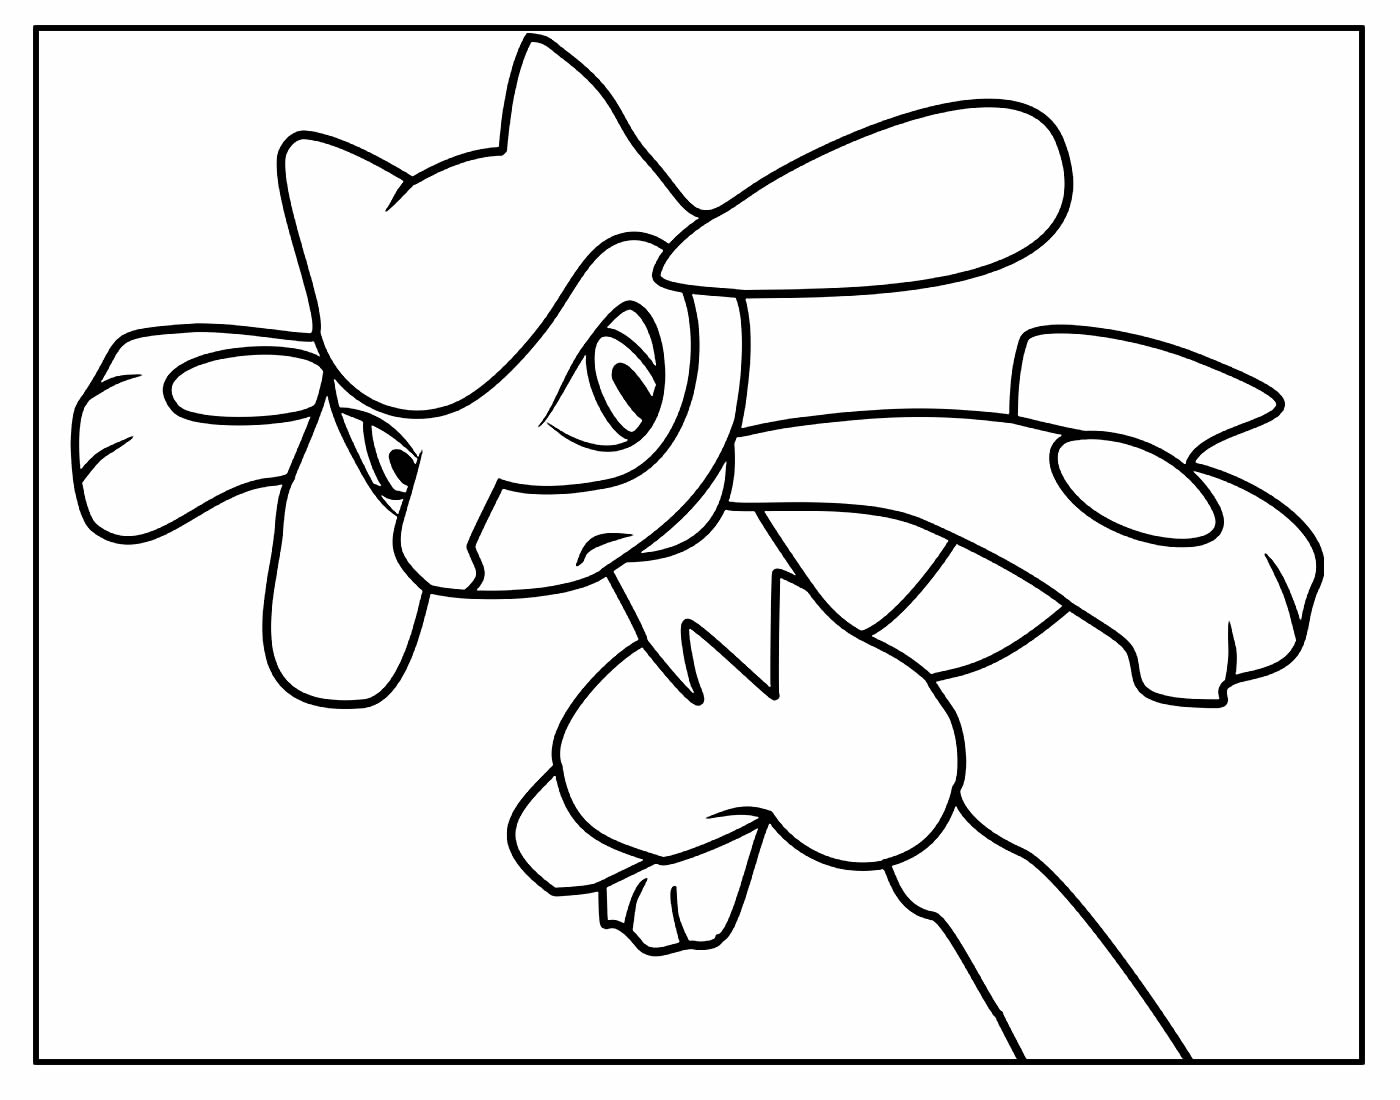 Desenho para pintar de Pokémon